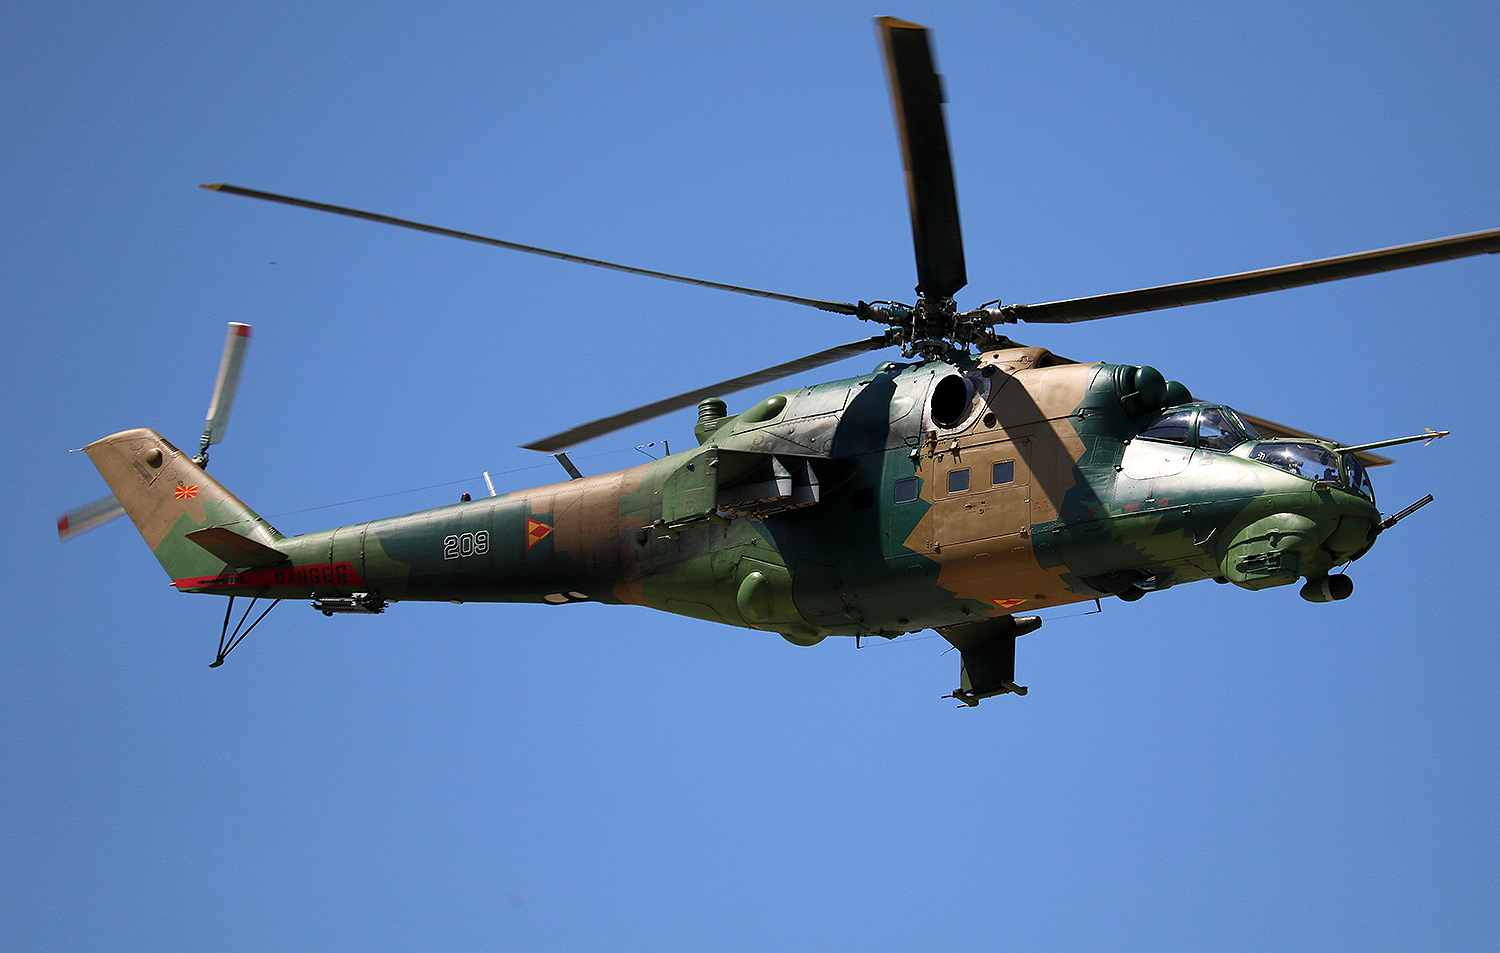 Makedonija ukida borbenu komponentu vojnog vazduhoplovstva, kupuje nove višenamenske helikoptere